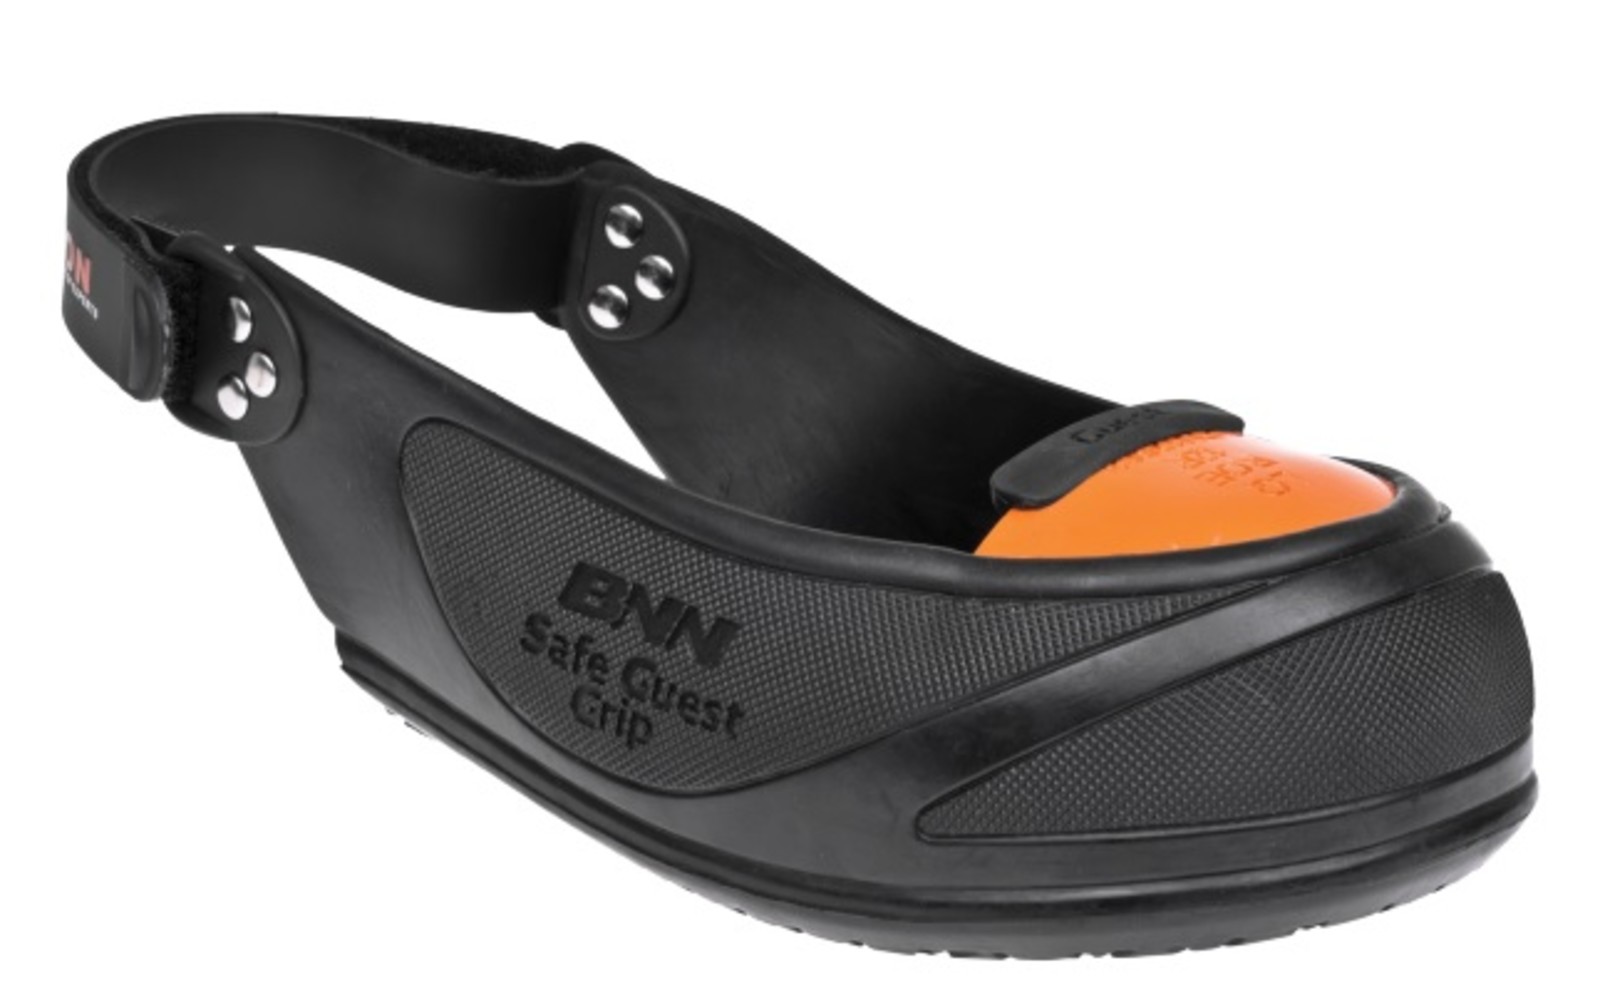 Bezpečnostné návleky na obuv Bennon Safe Guest  - veľkosť: 43-50